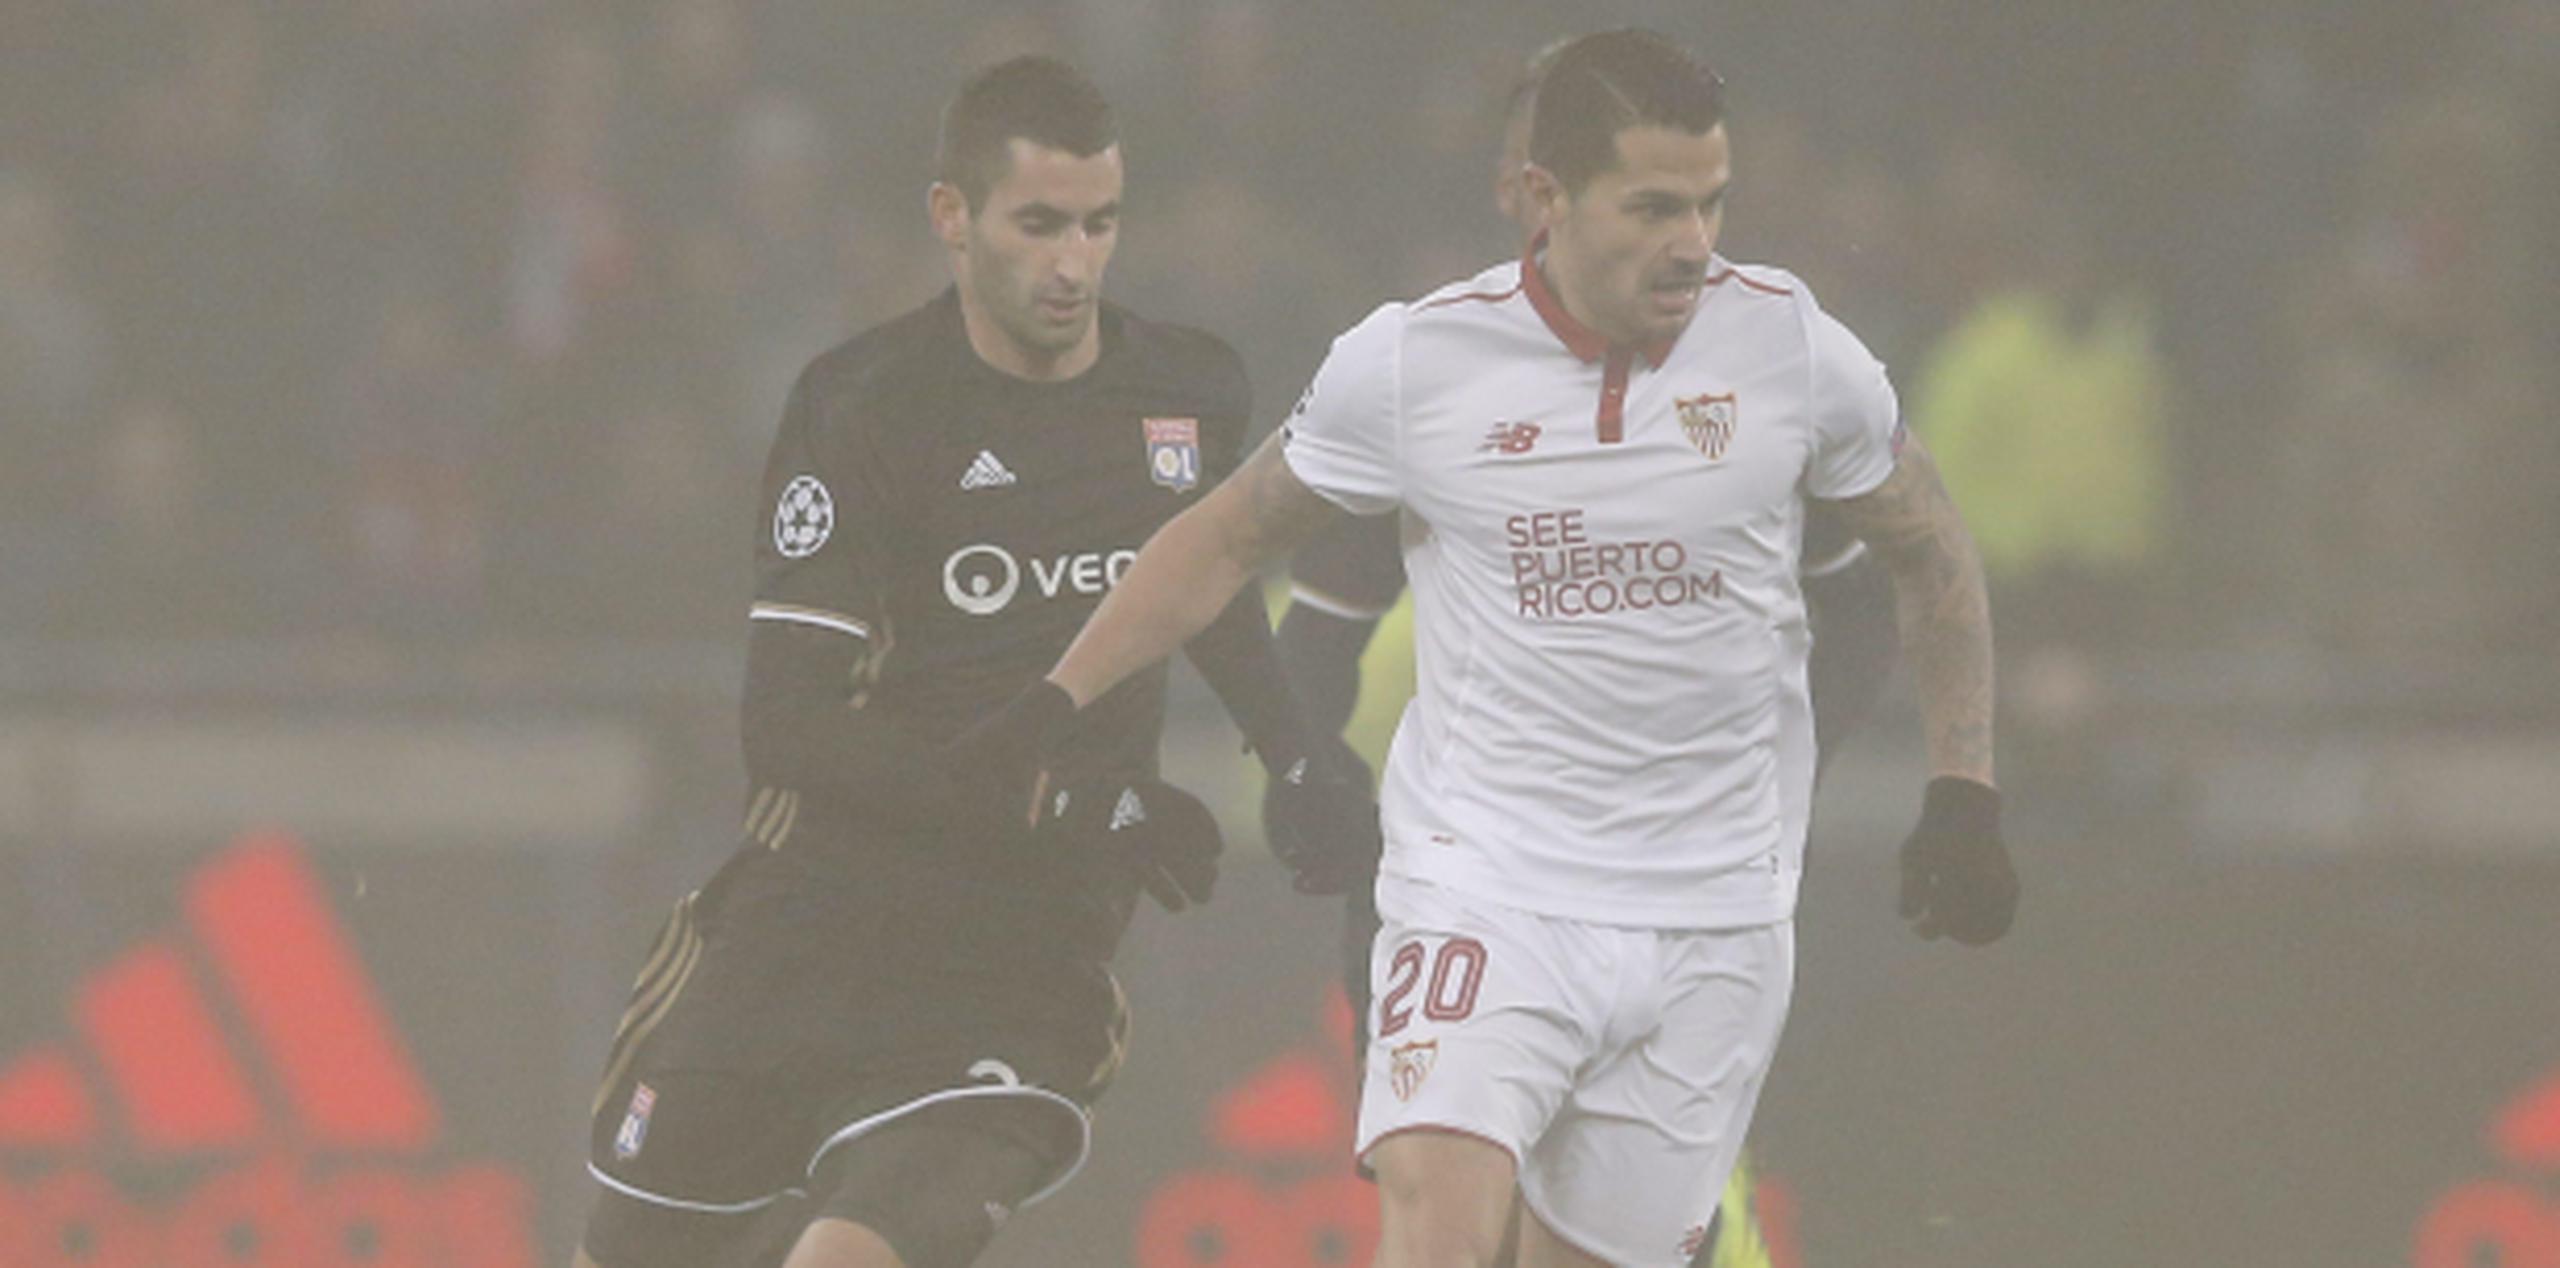 Maxime Gonalons del Olympique Lyonnais disputa el balón con Vitolo del Sevilla FC en el campo arropado por neblina. (Agencia EFE)